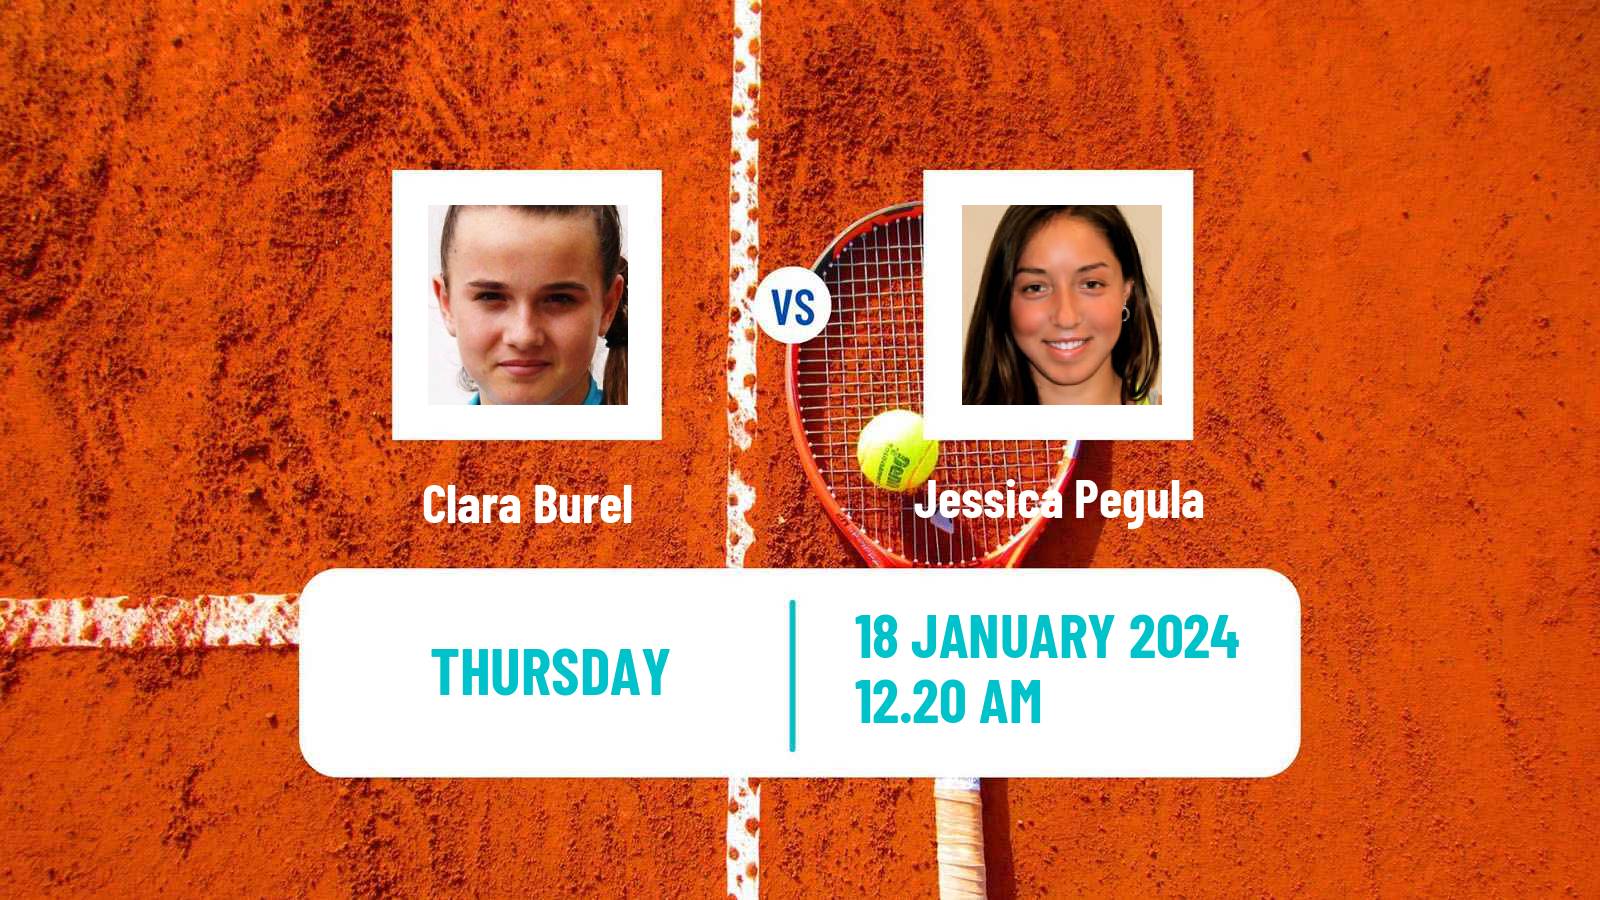 Tennis WTA Australian Open Clara Burel - Jessica Pegula